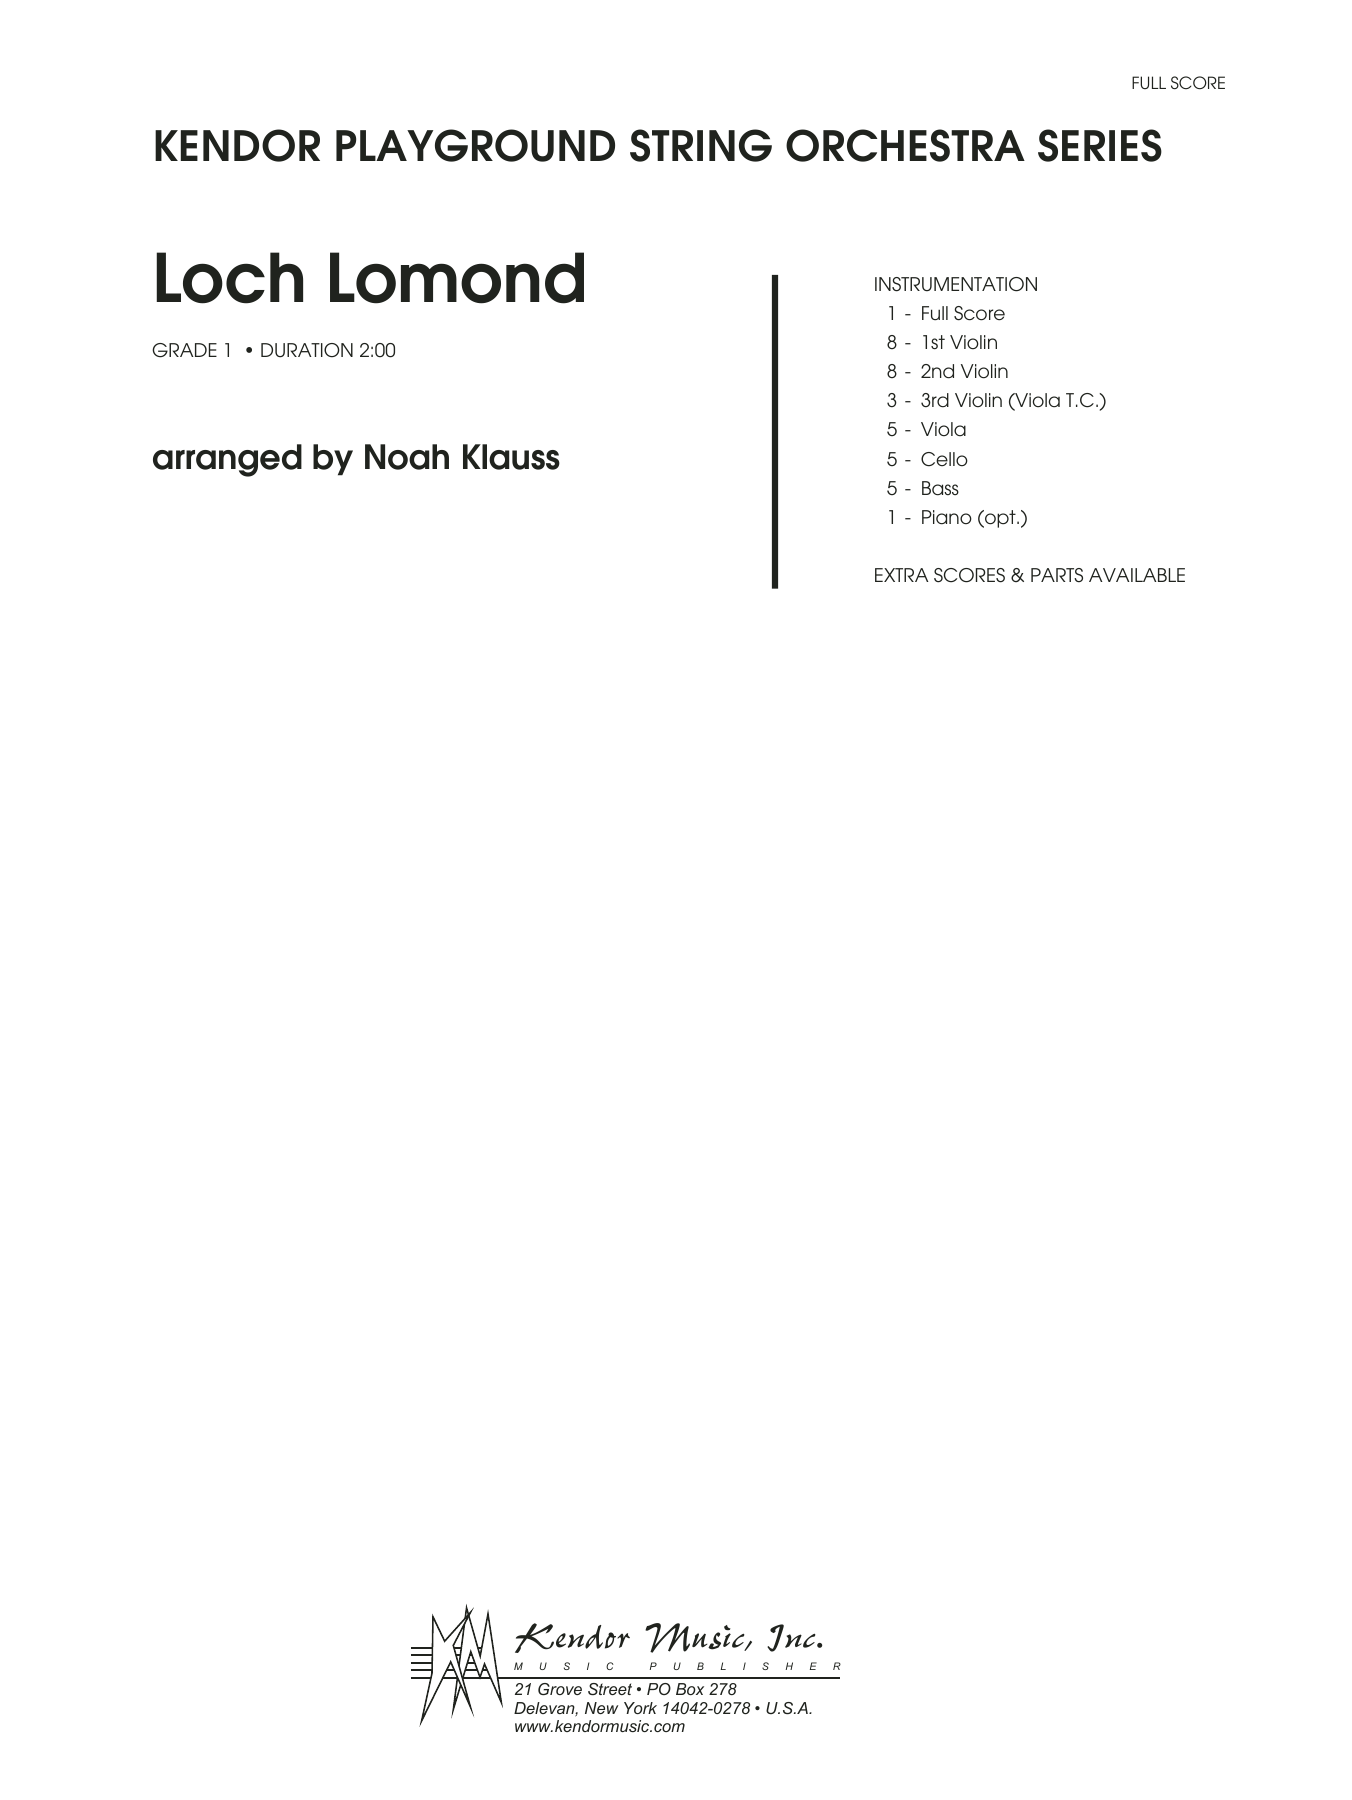 Download Noah Klauss Loch Lomond - Full Score Sheet Music